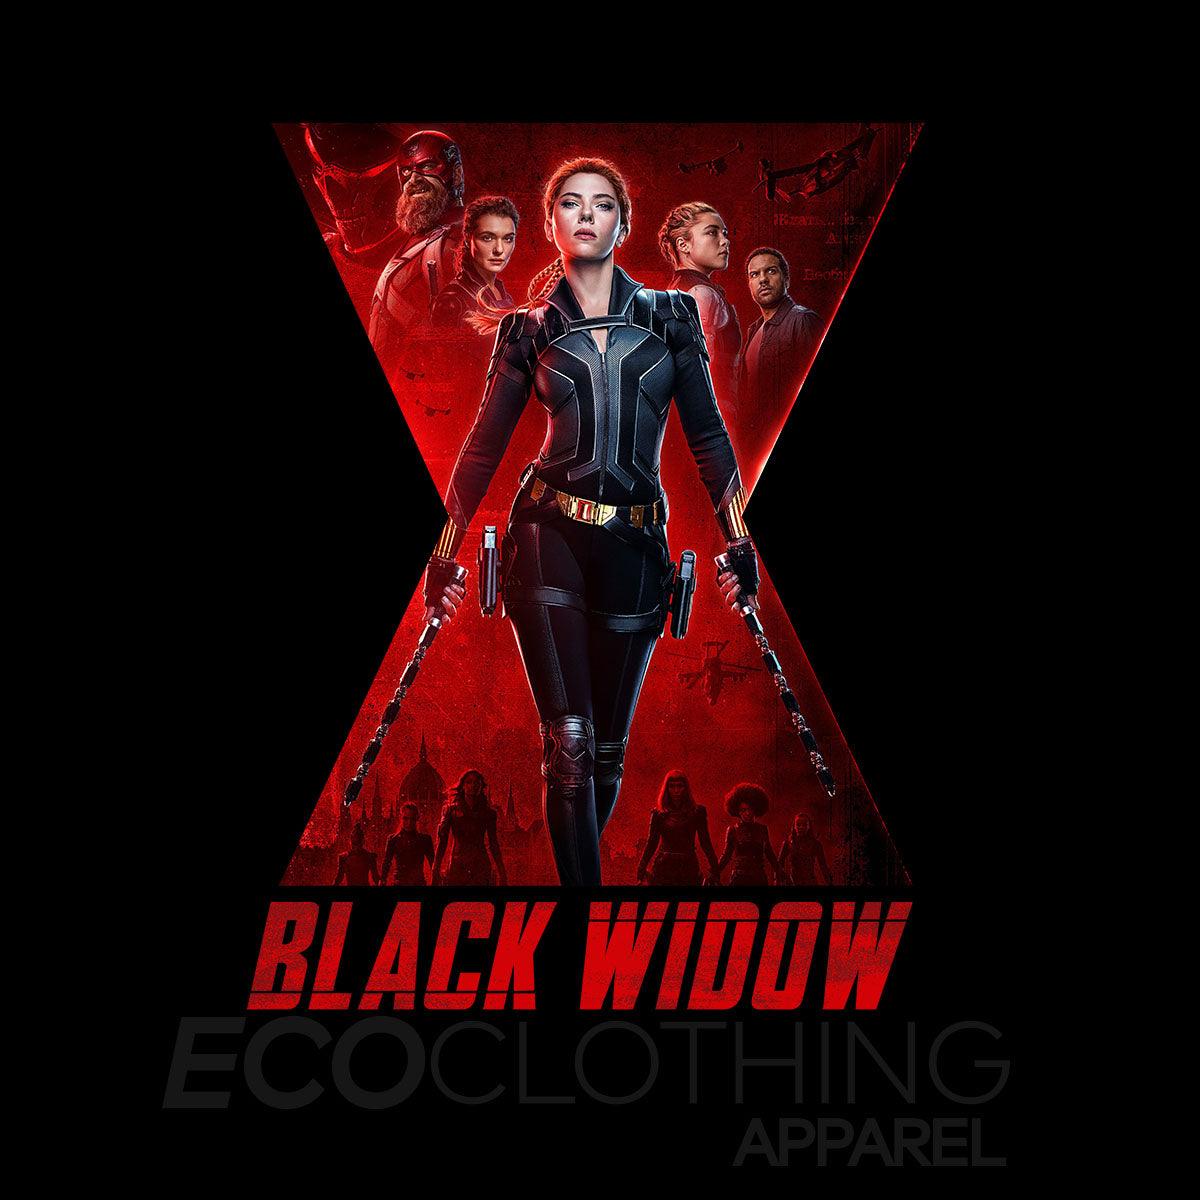 Black Widow Movie Tee Action Marvel Adventure Superhero Adult Gift Unisex Tank Top - Kuzi Tees